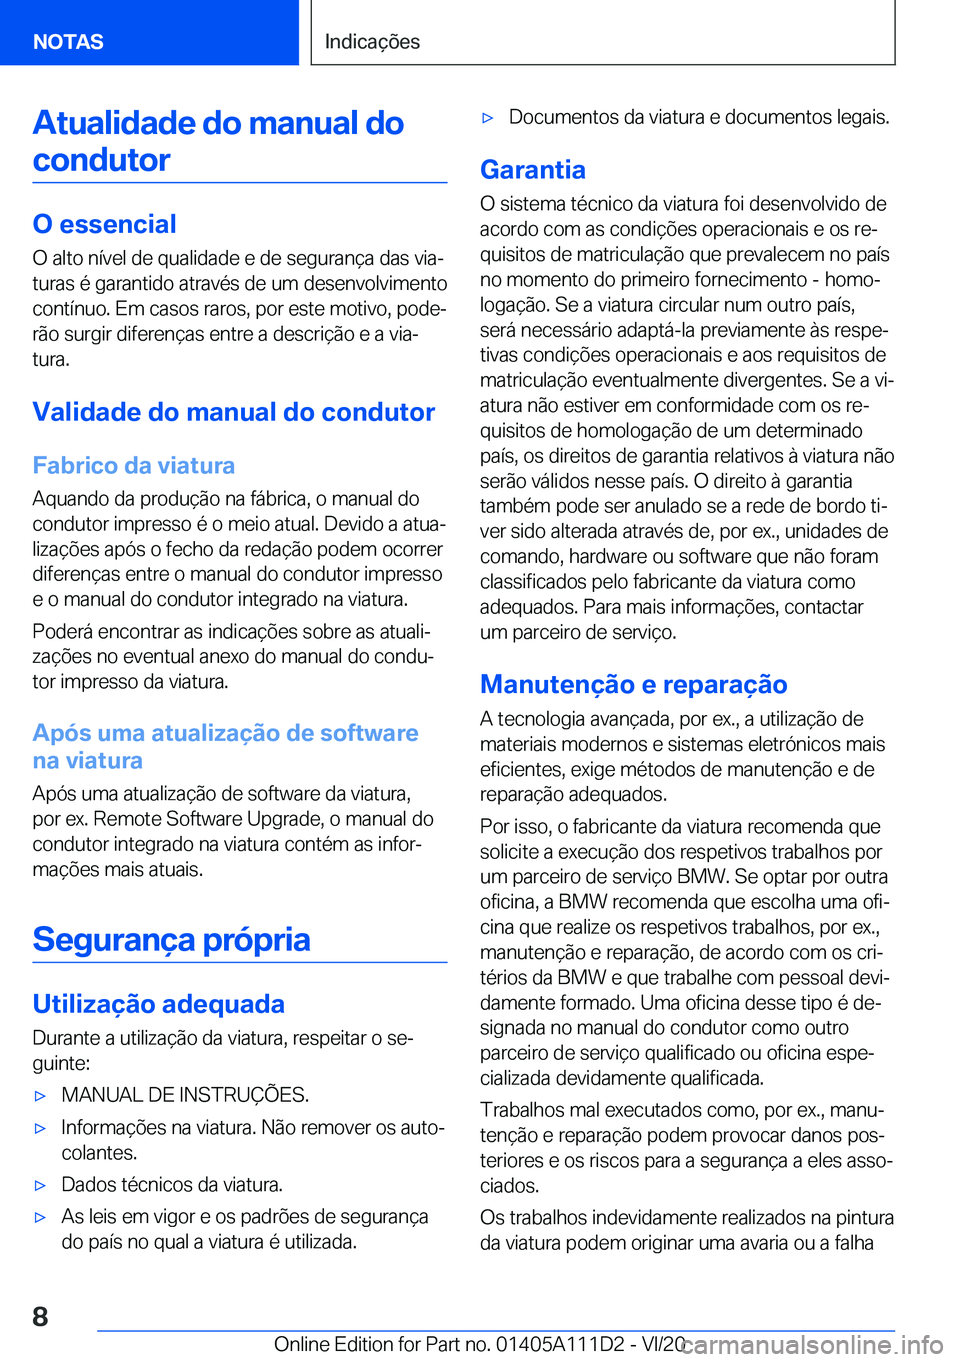 BMW 3 SERIES SEDAN PLUG-IN HYBRID 2021  Manual do condutor (in Portuguese) �A�t�u�a�l�i�d�a�d�e��d�o��m�a�n�u�a�l��d�o�c�o�n�d�u�t�o�r
�O��e�s�s�e�n�c�i�a�l
�O��a�l�t�o��n�